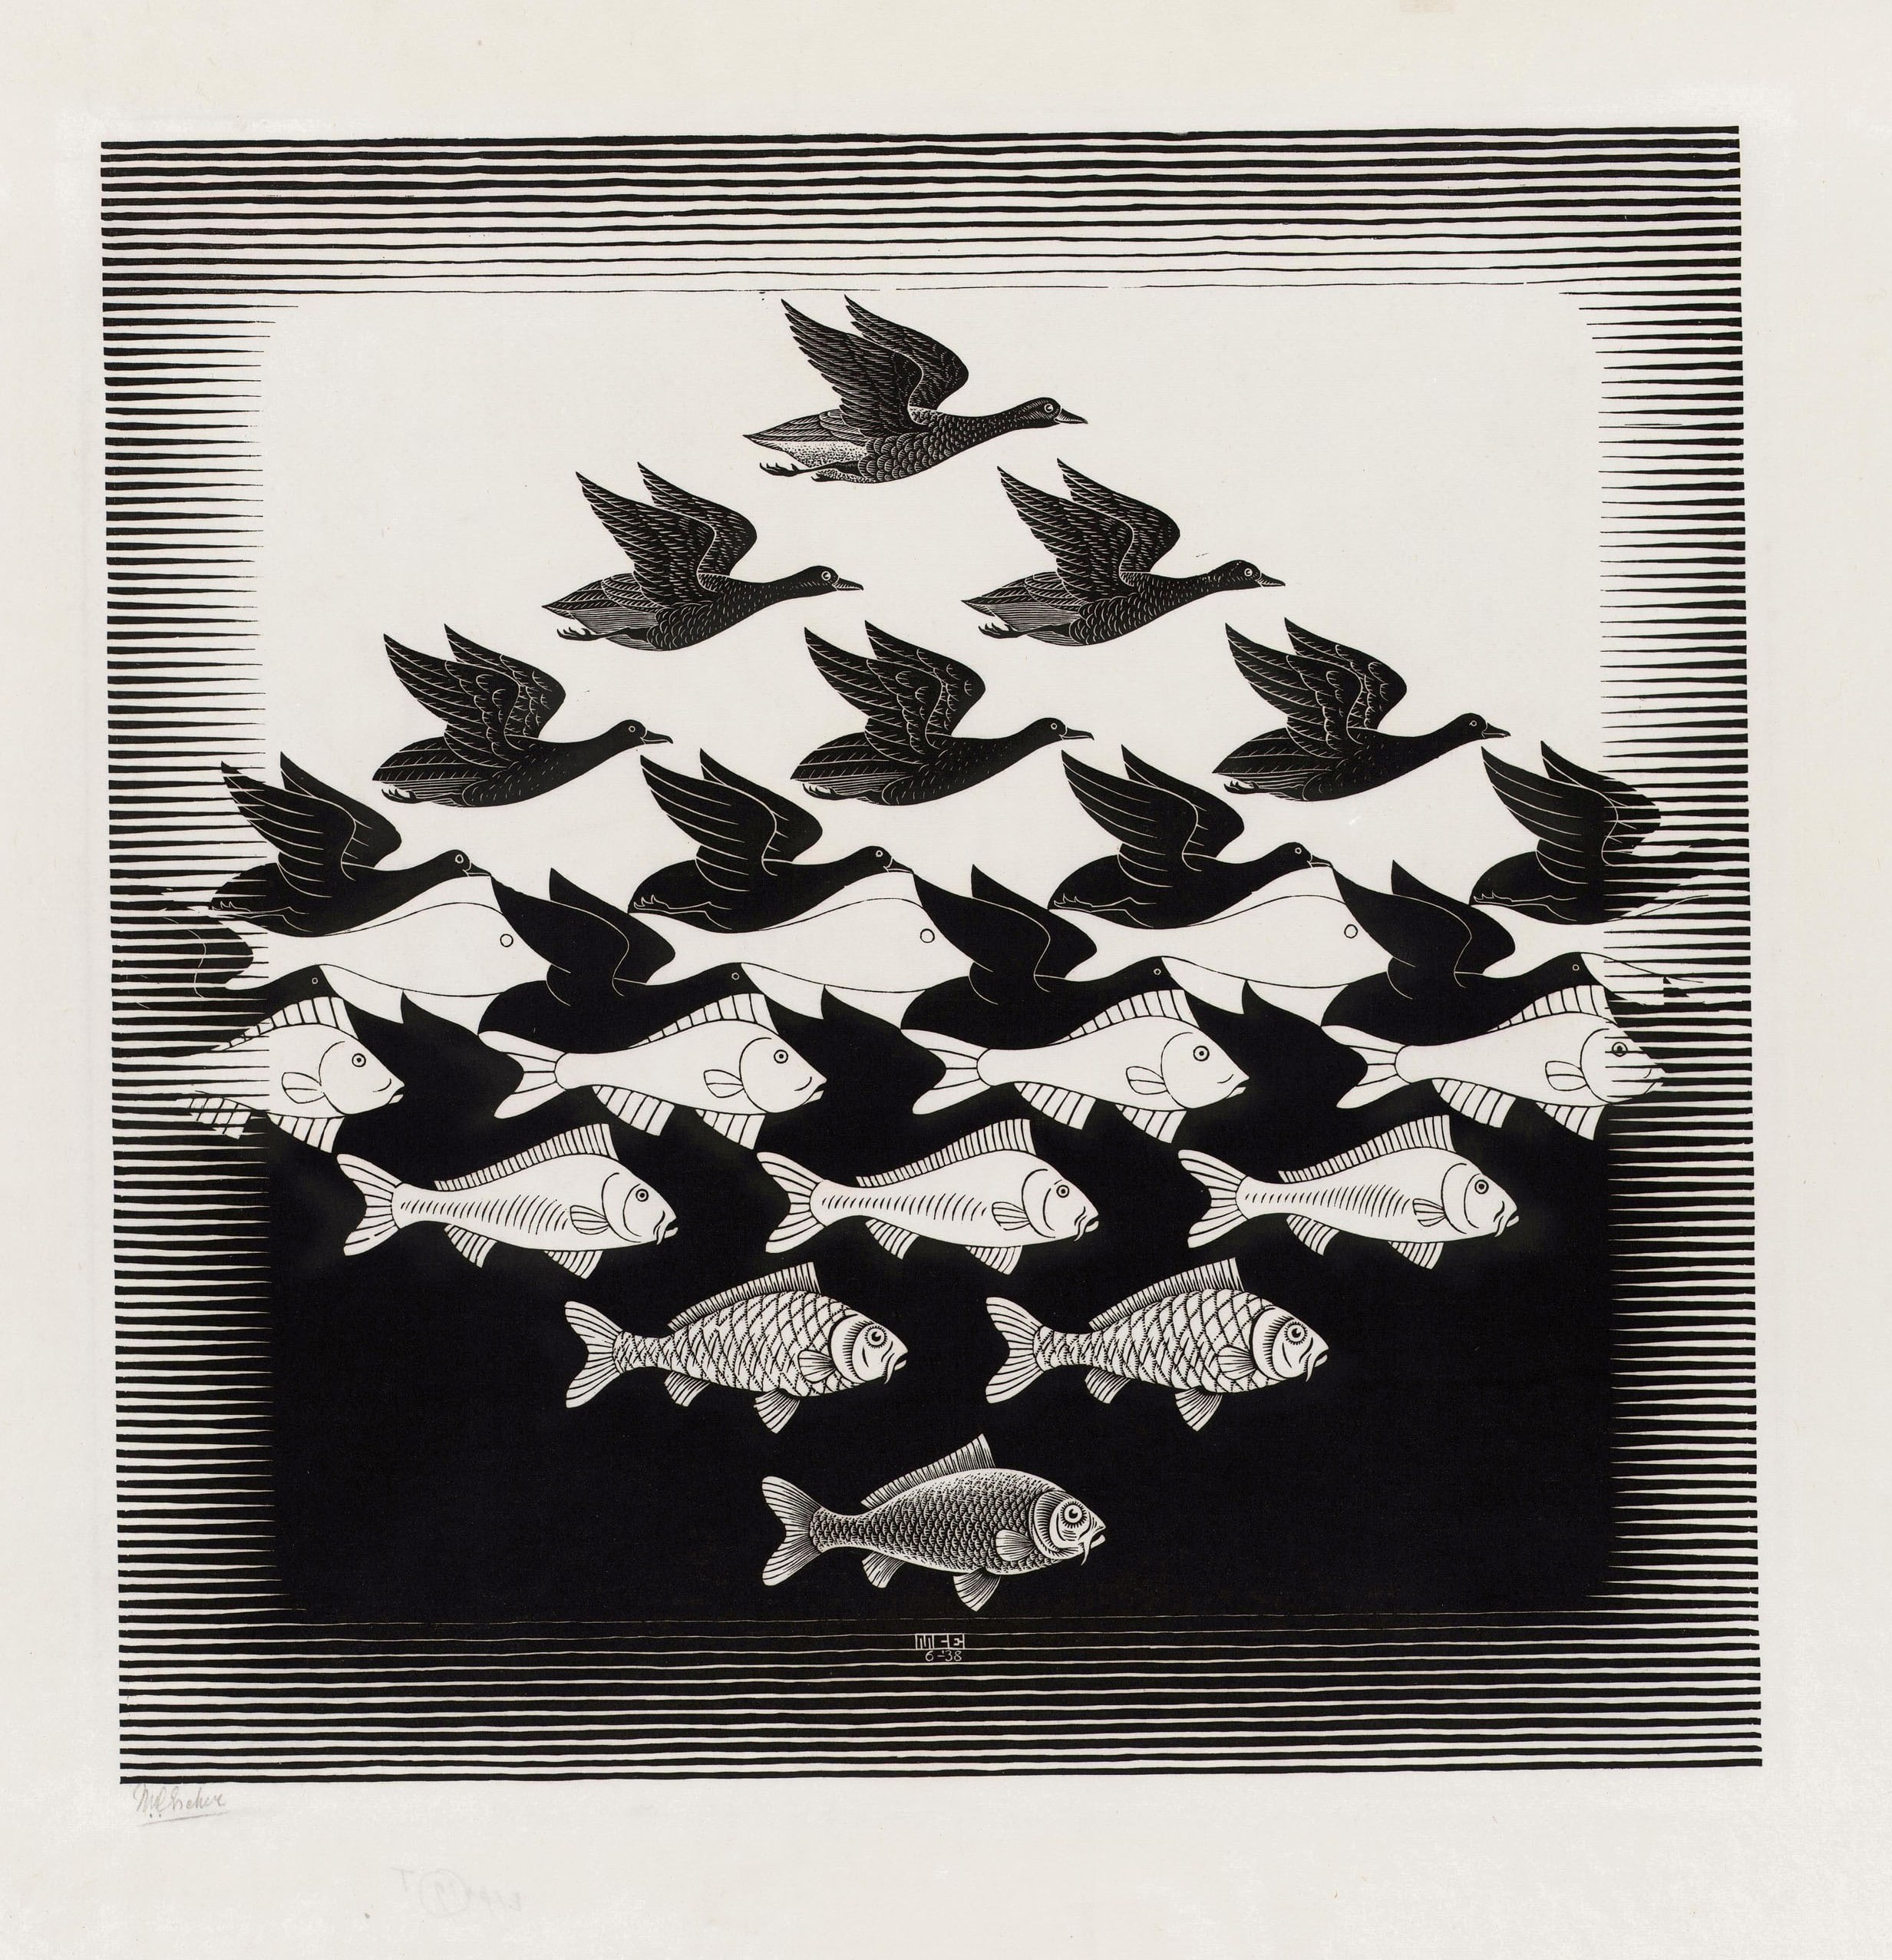 animals, monochrome, artwork, optical illusion, fish, signatures